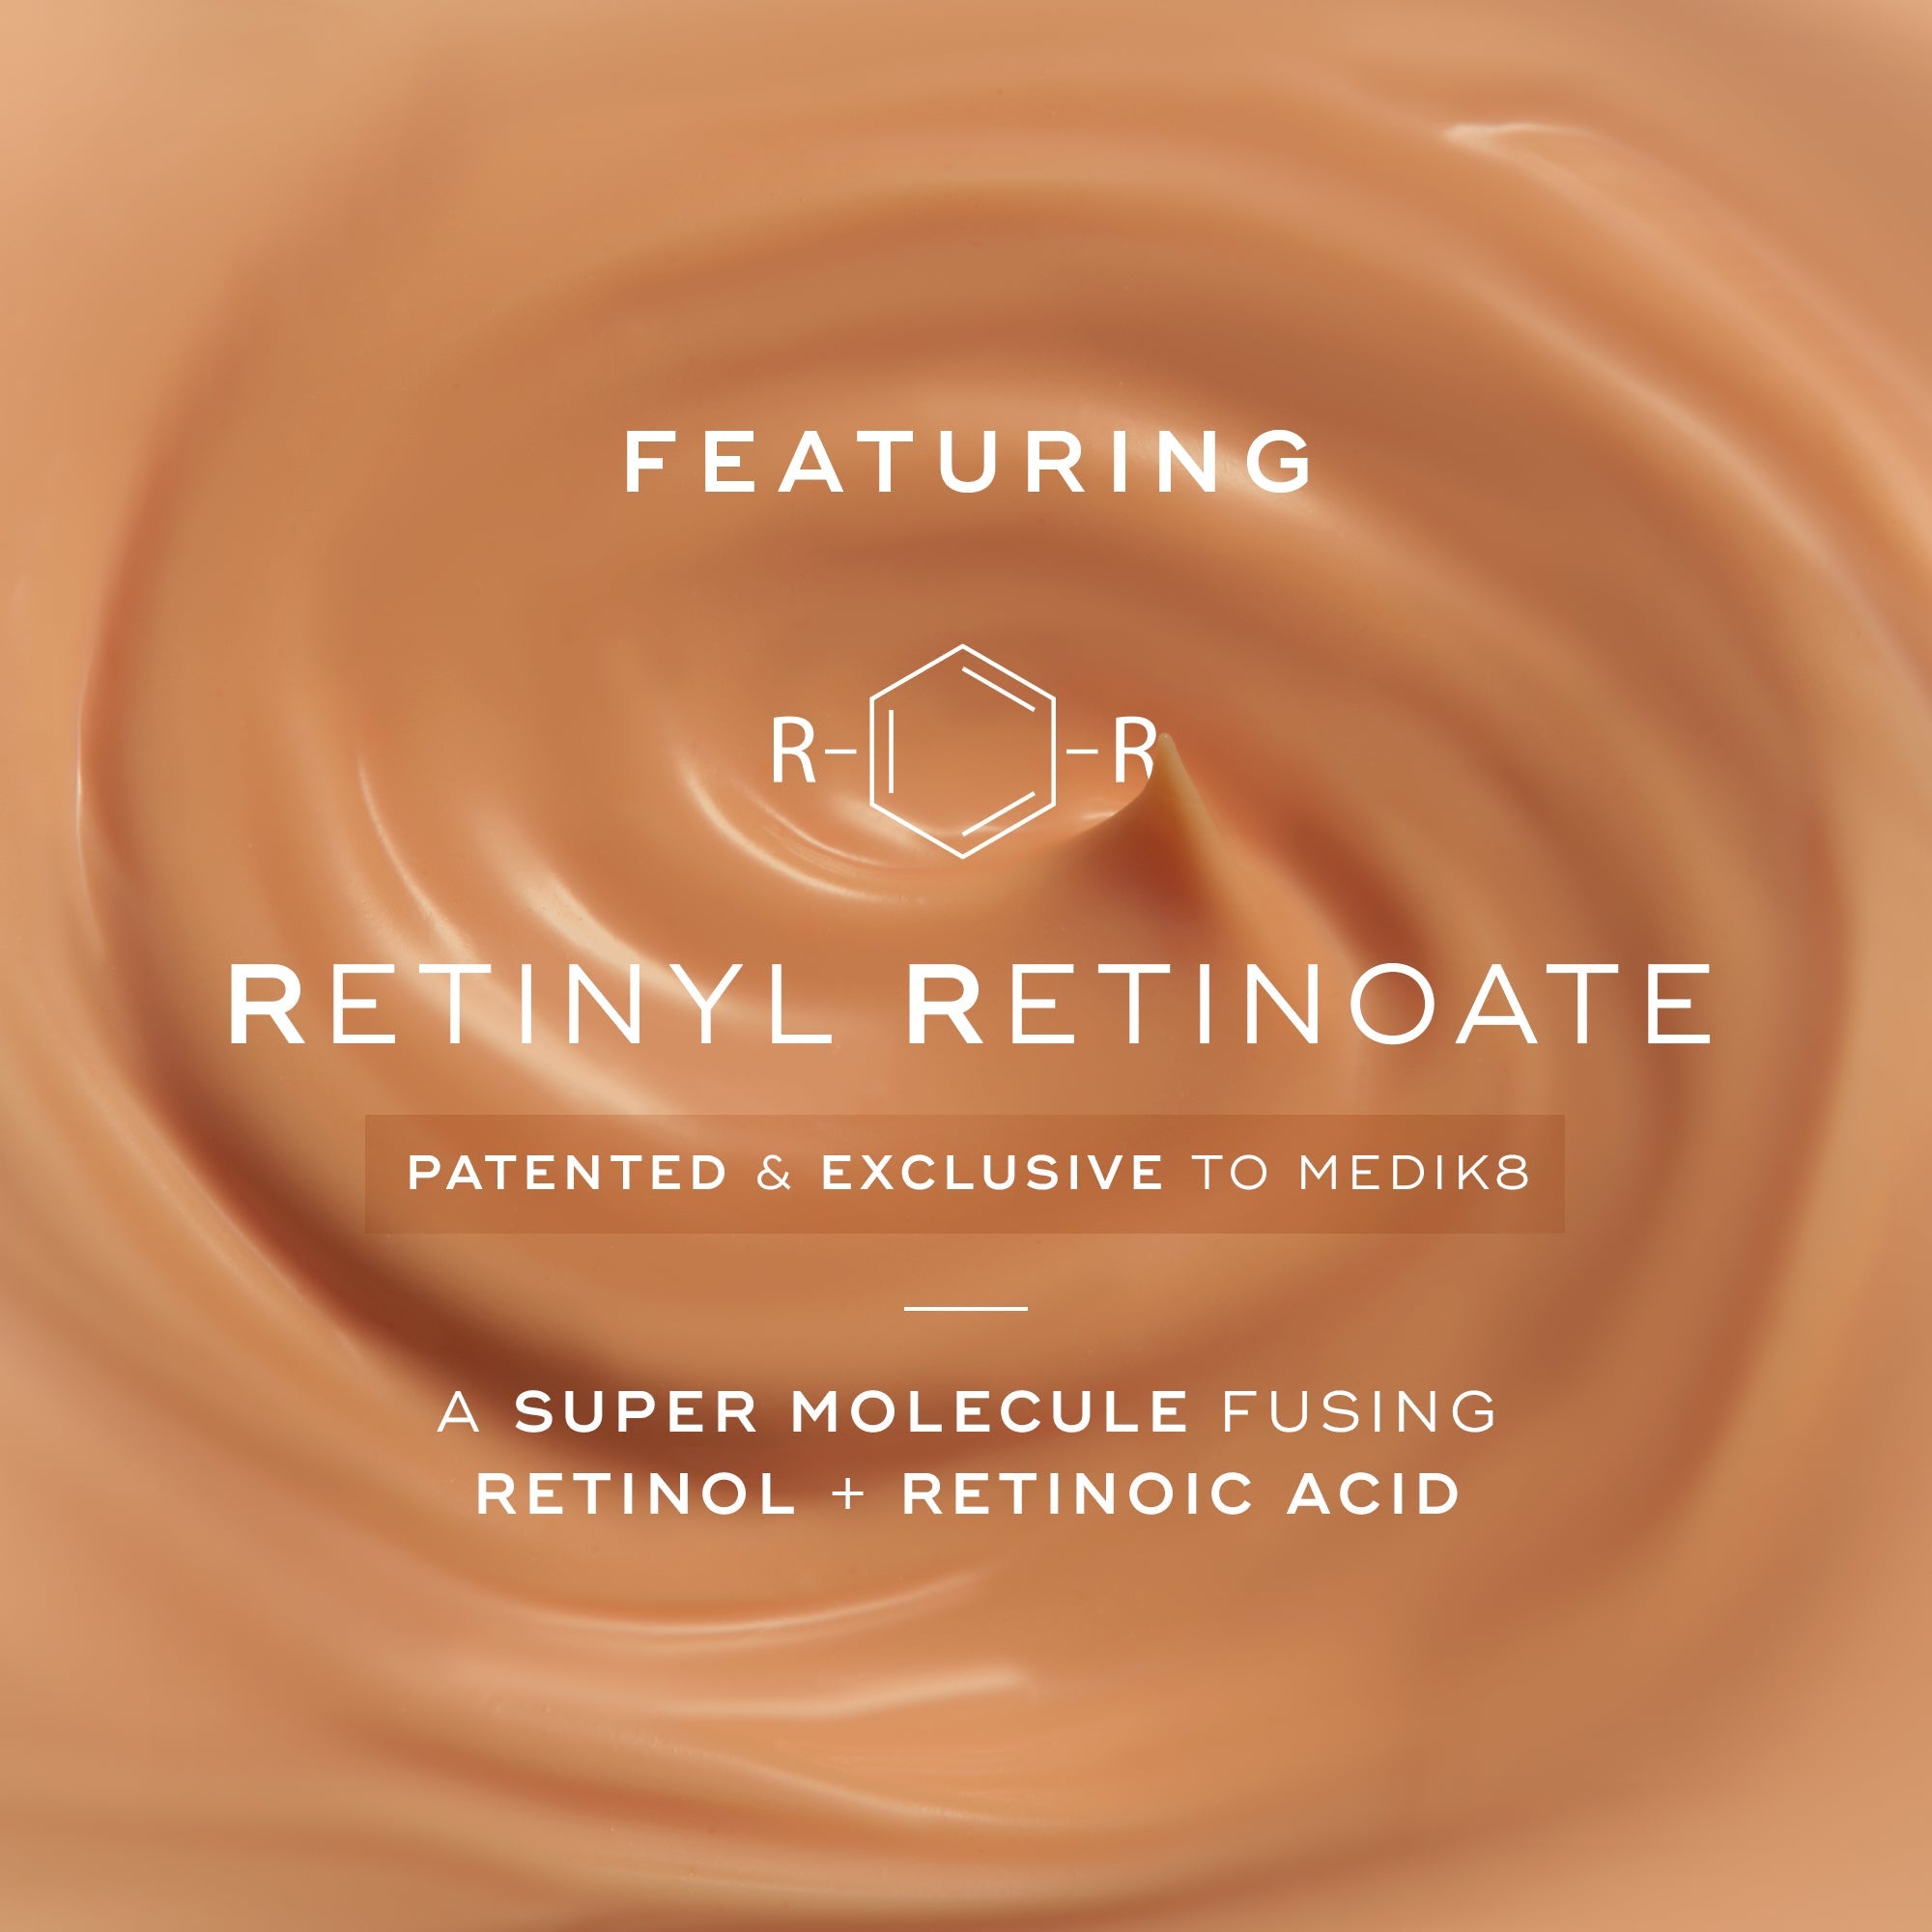 R-Retinoate® Intense MEDIK8 Official Stockist. Worldwide shipping. Medical-grade skincare. The M-ethod Aesthetics